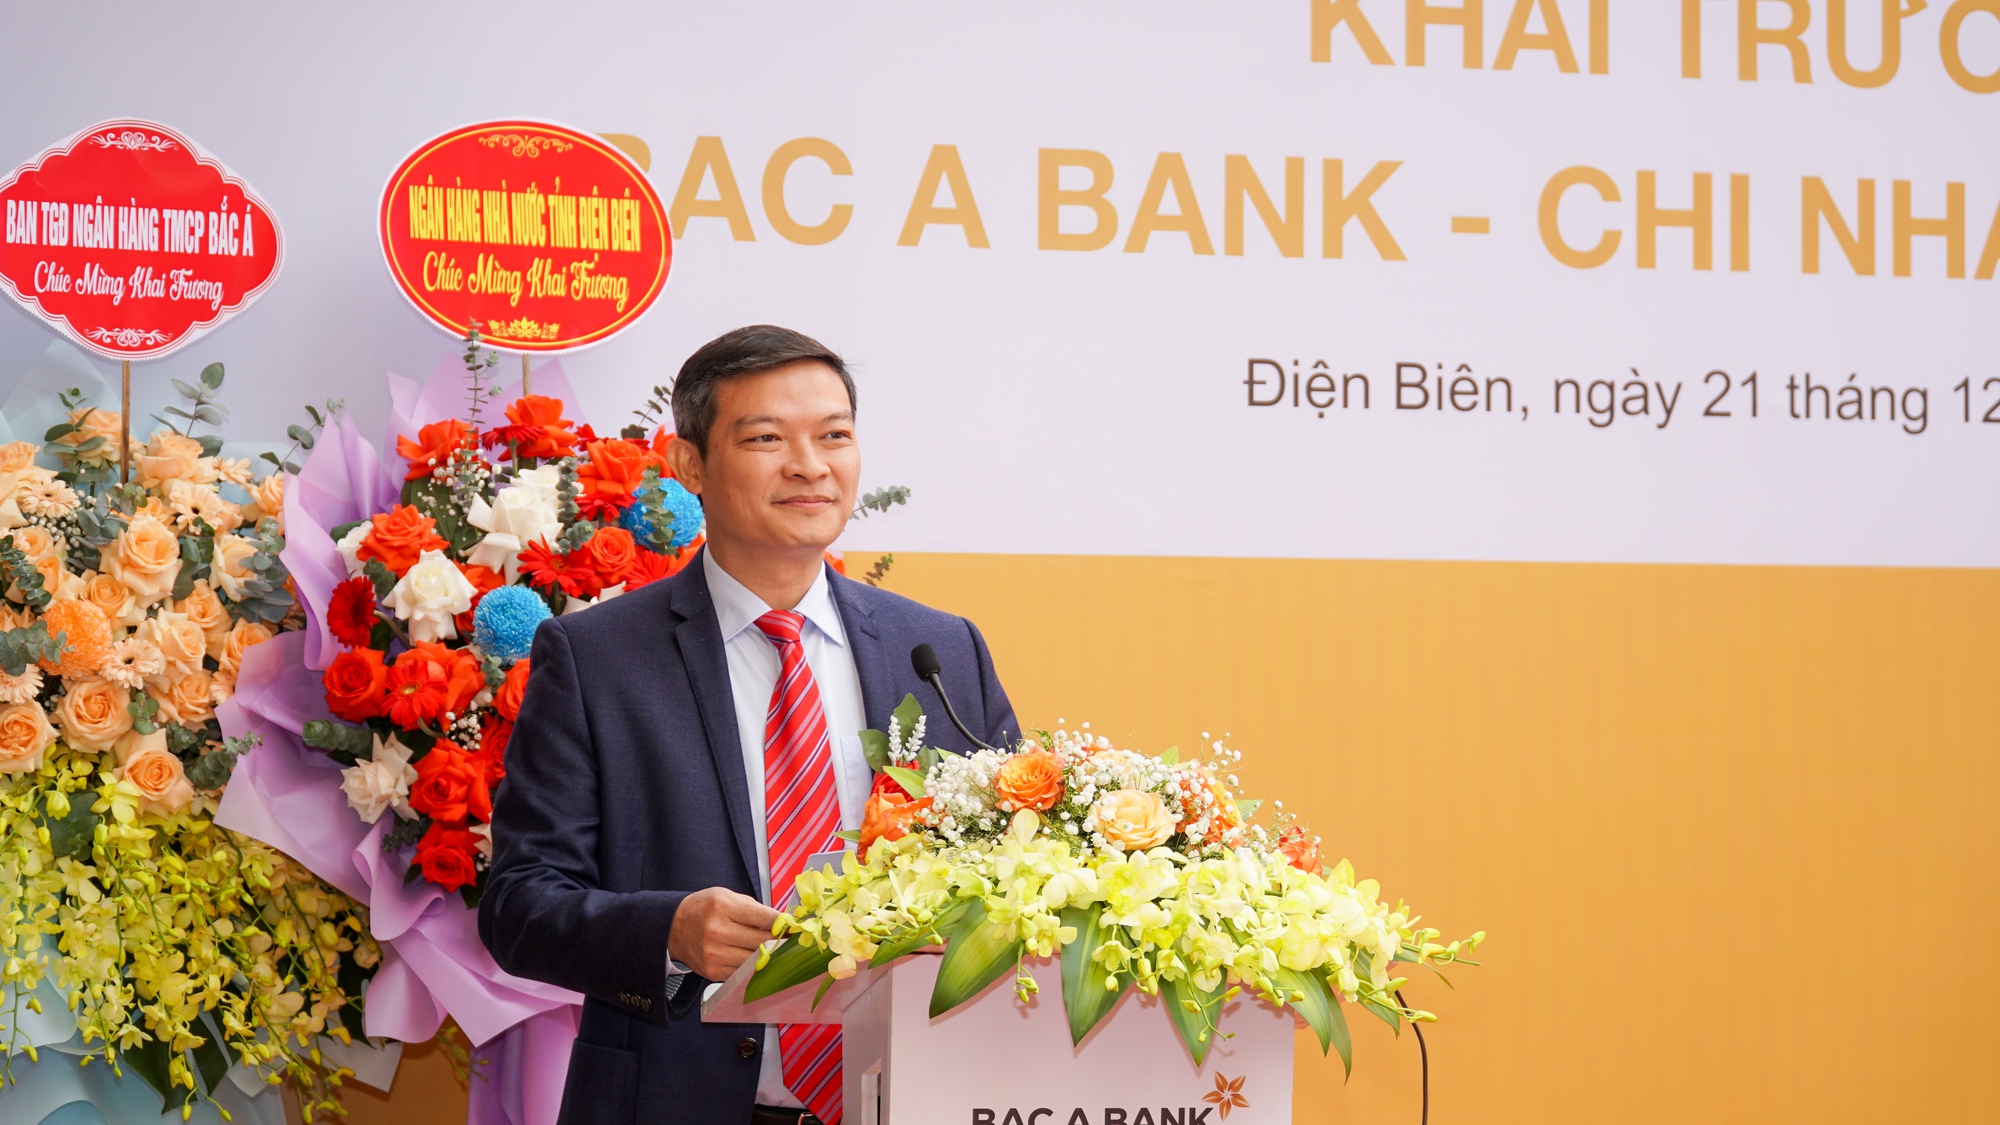 BAC A BANK mở rộng mạng lưới tại Điện Biên - Ảnh 2.